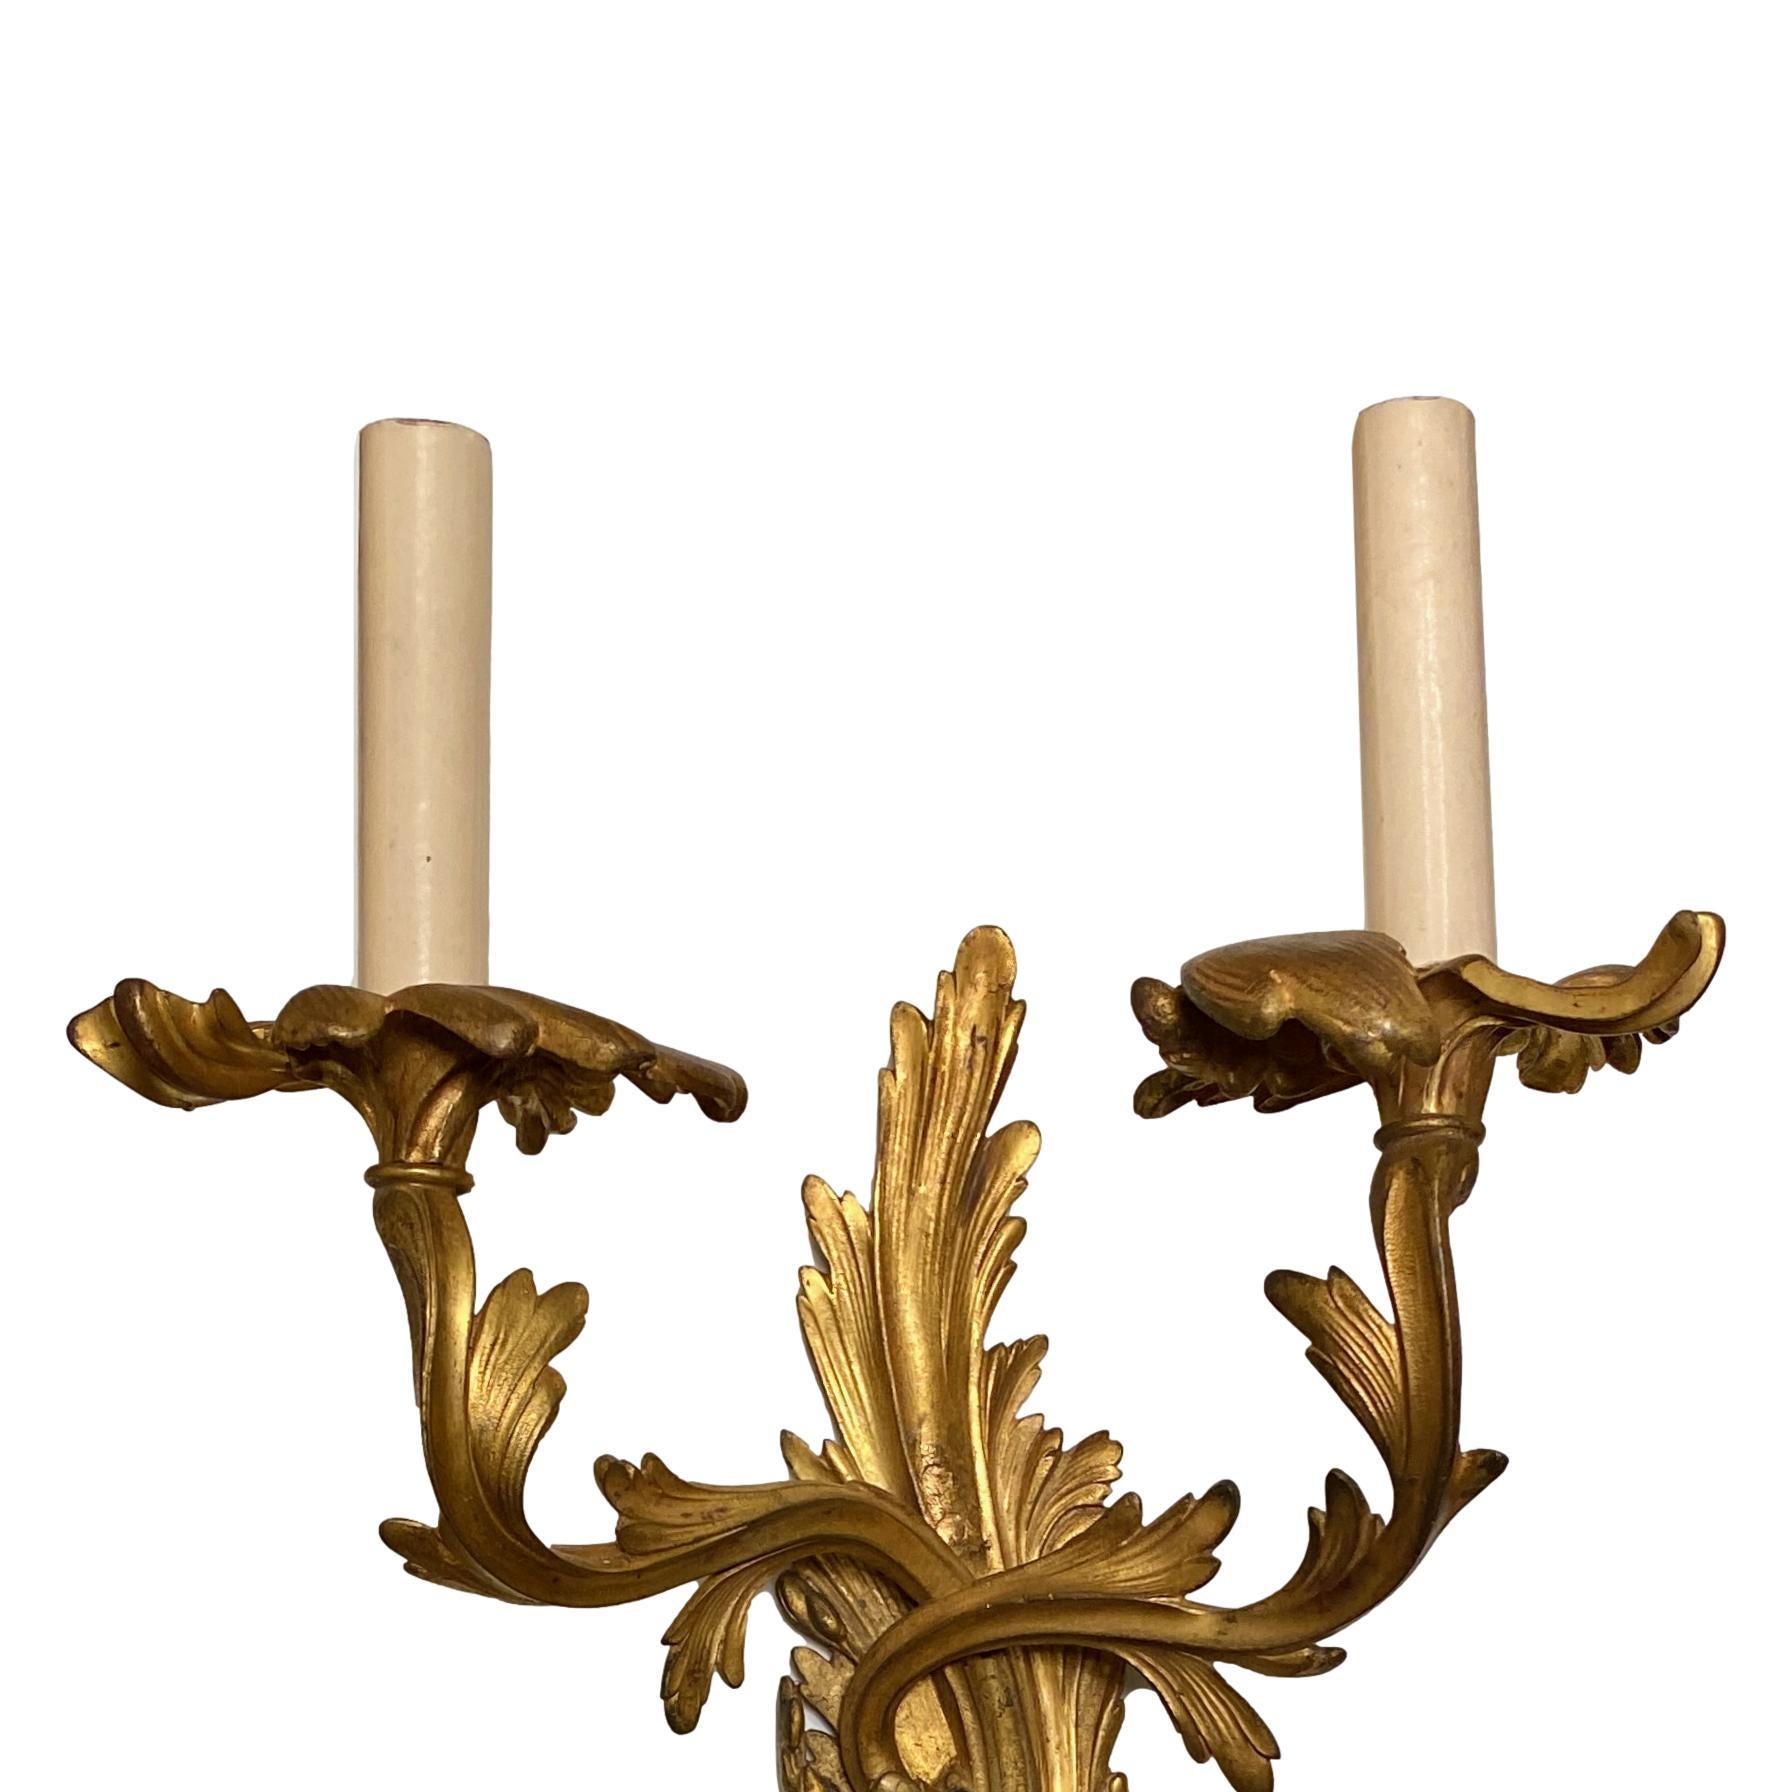 Ensemble de huit appliques à deux lumières de style Louis XV, datant des années 1920, en bronze doré, avec un motif de volutes sur le corps. Vendu par paire.

Mesures :
Hauteur : 22